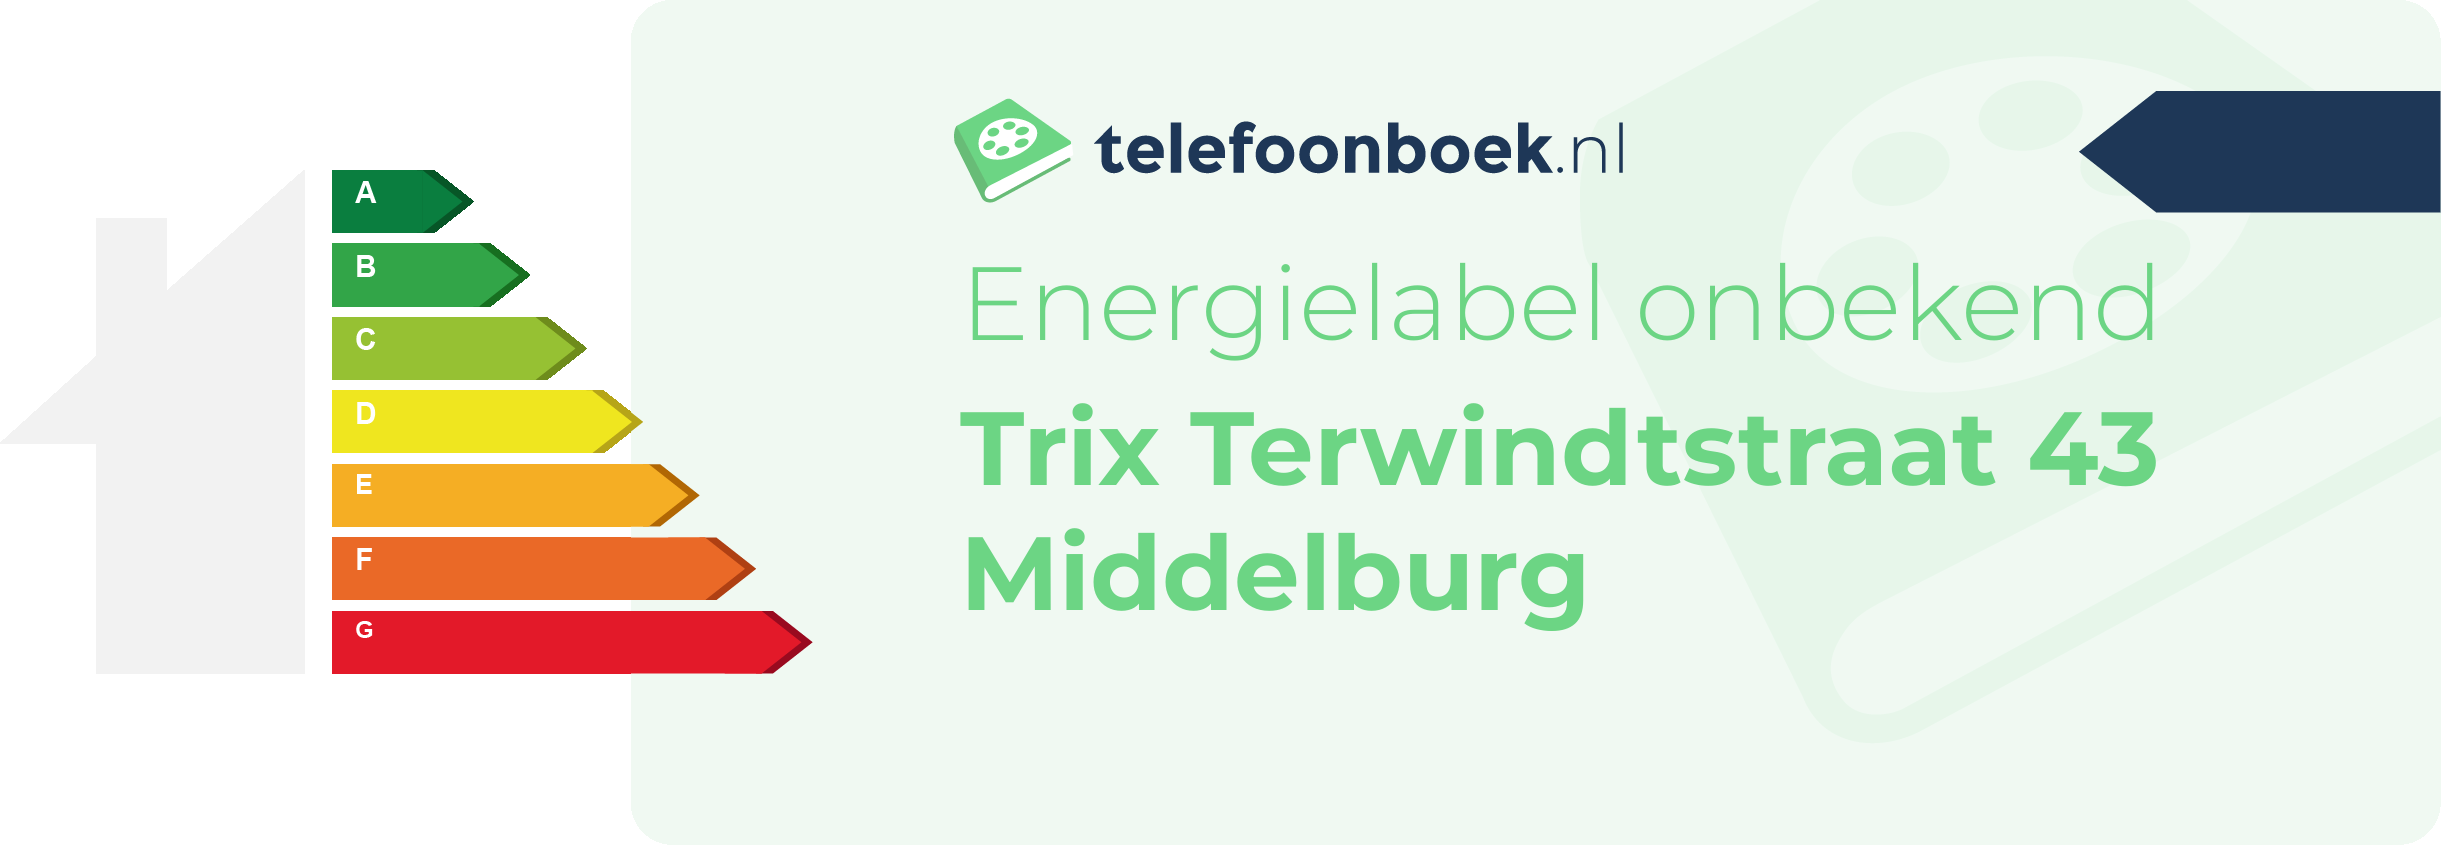 Energielabel Trix Terwindtstraat 43 Middelburg